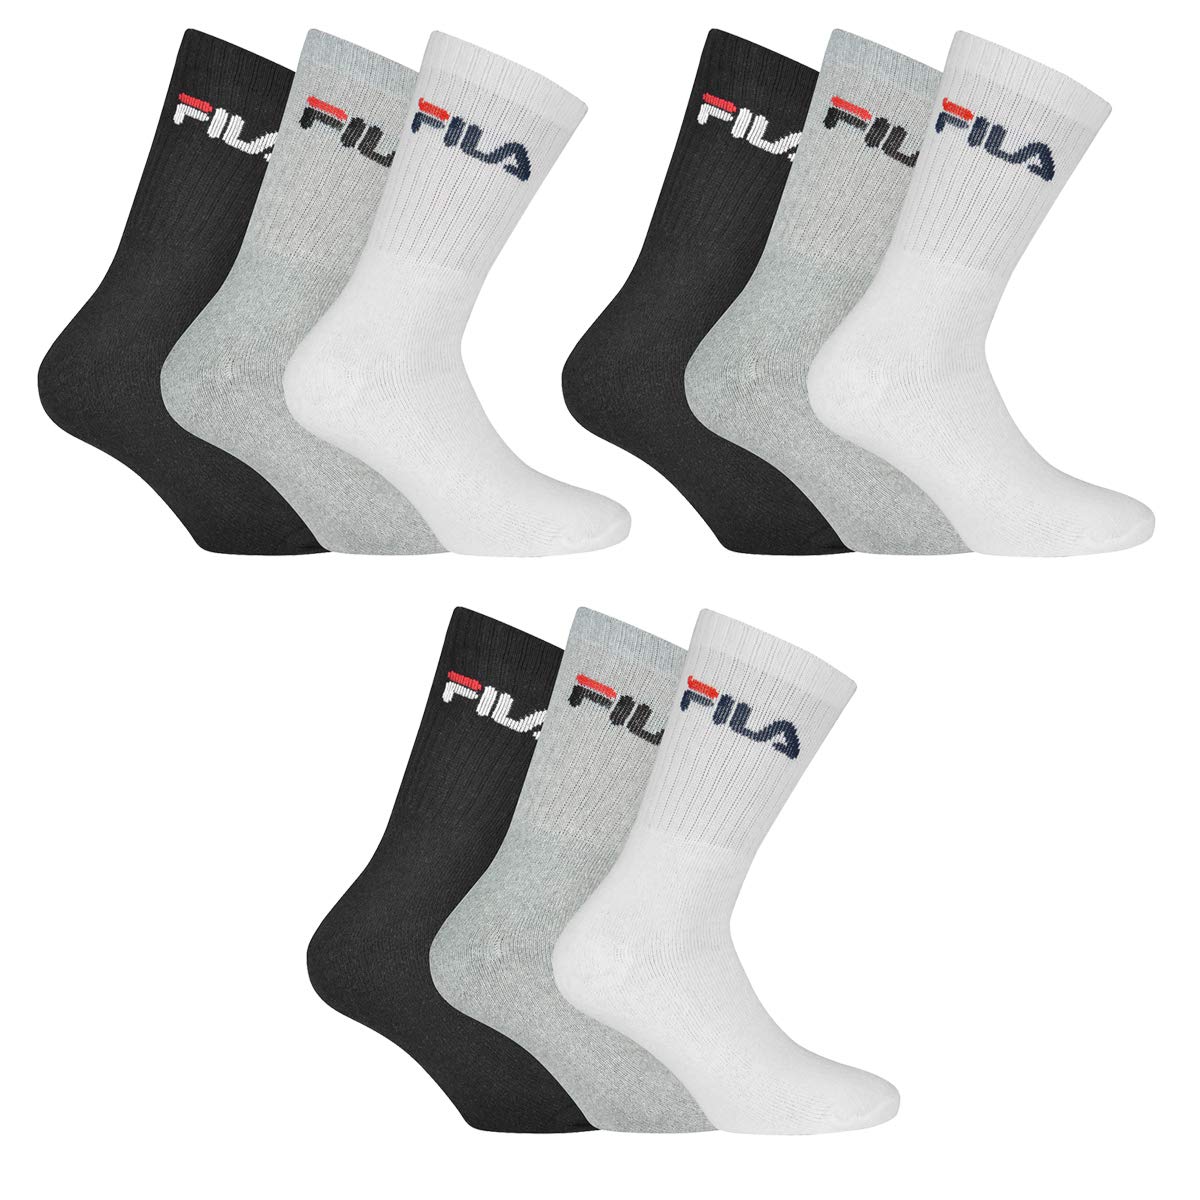 FILA 9 Paar Socken, Frottee Tennissocken mit Logobund, Unisex (3x 3er Pack) (Classic Mix (Schwarz; Weiß; Grau), 43-46 (9-11 UK))